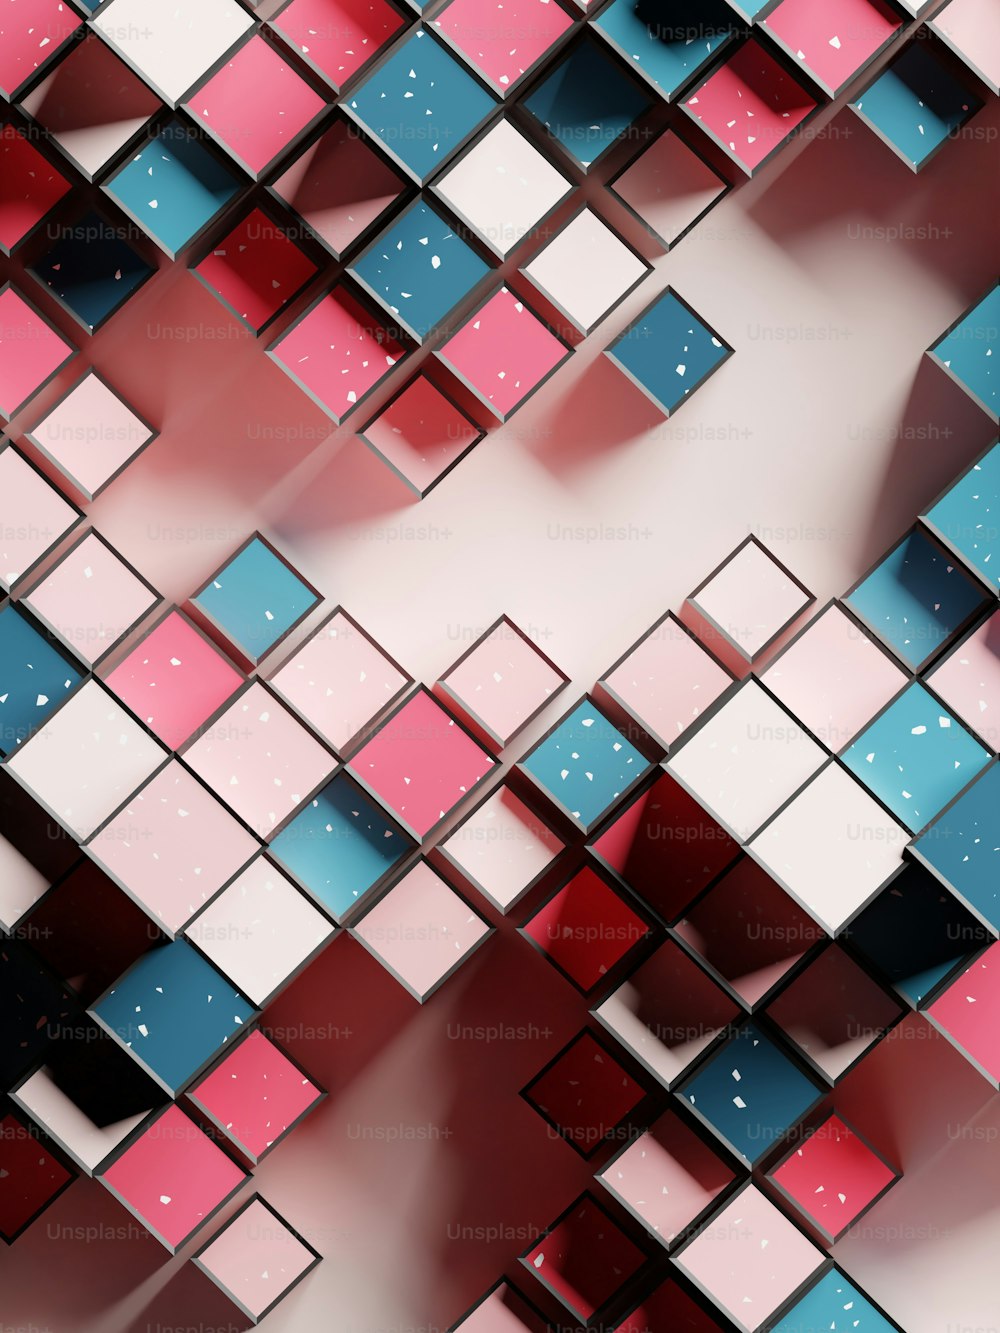 Un'immagine astratta di quadrati rosa e blu